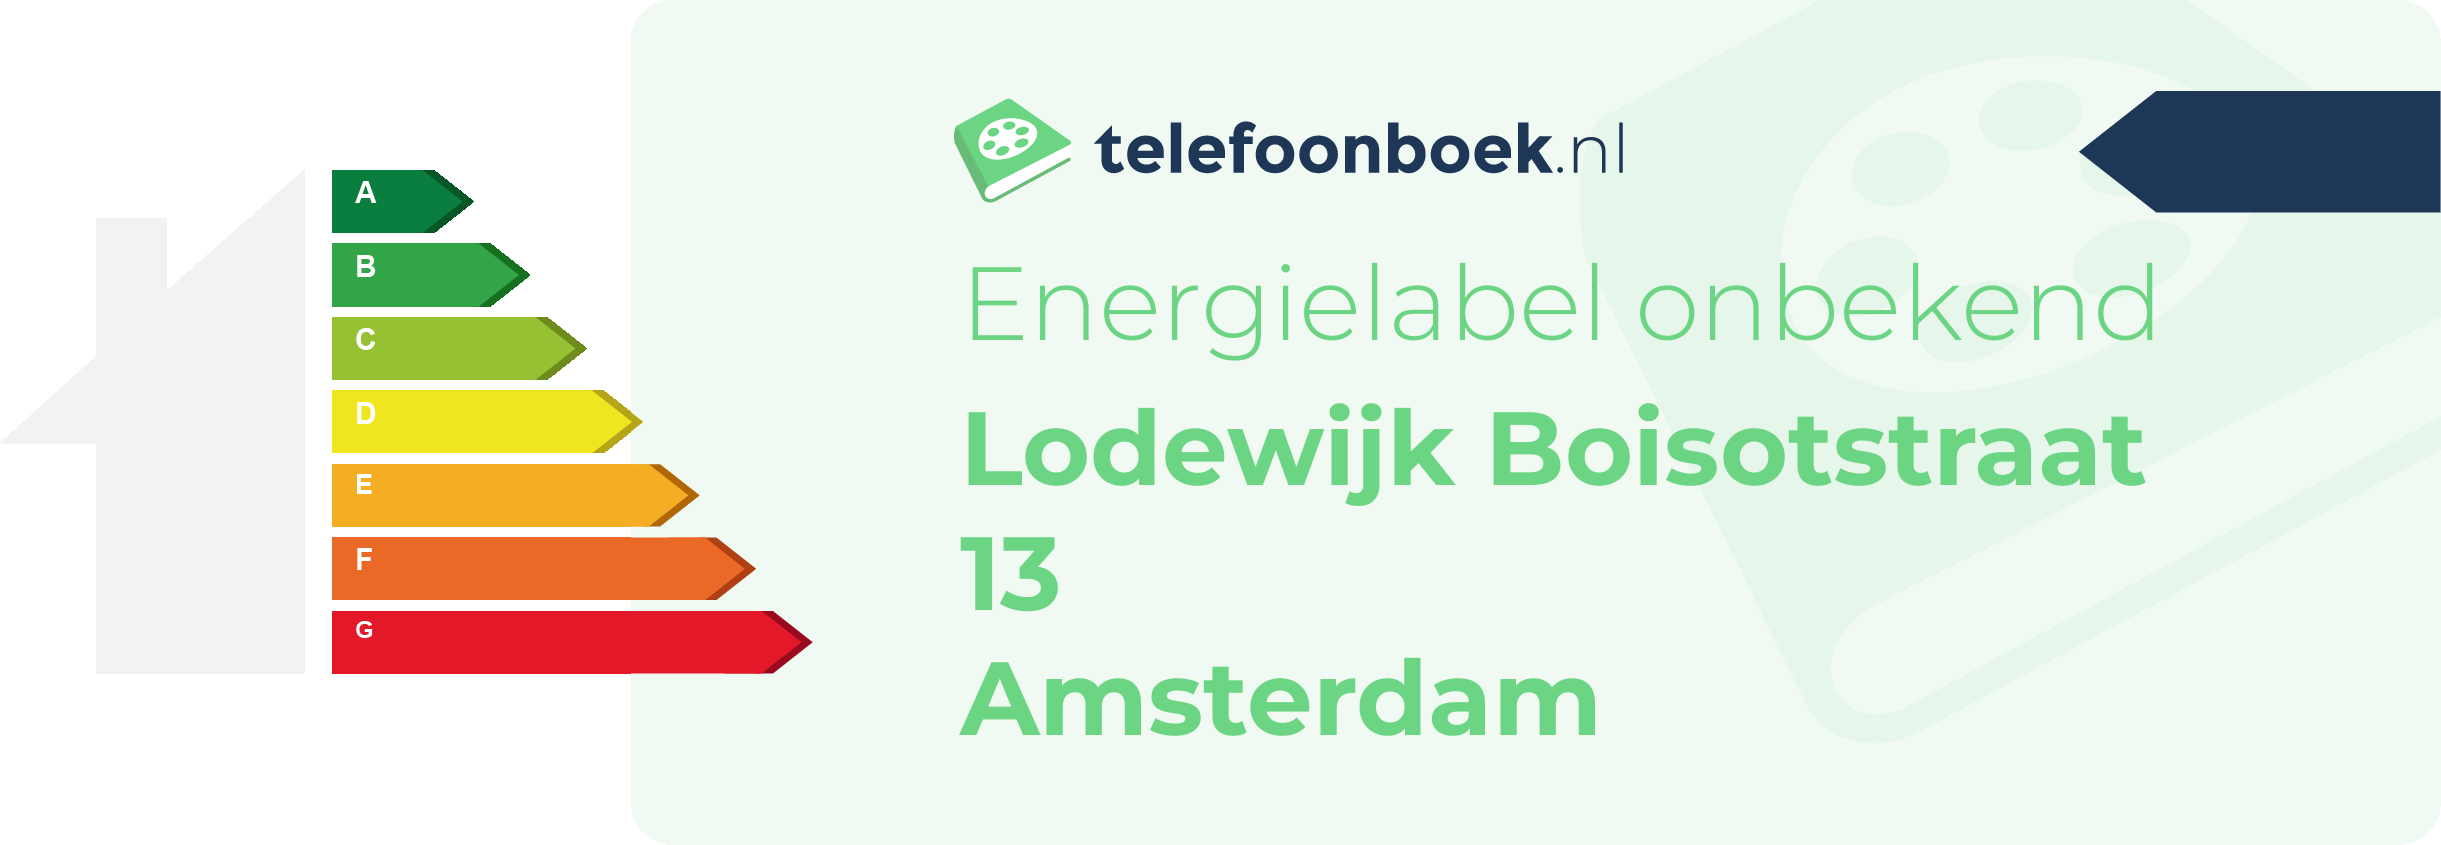 Energielabel Lodewijk Boisotstraat 13 Amsterdam